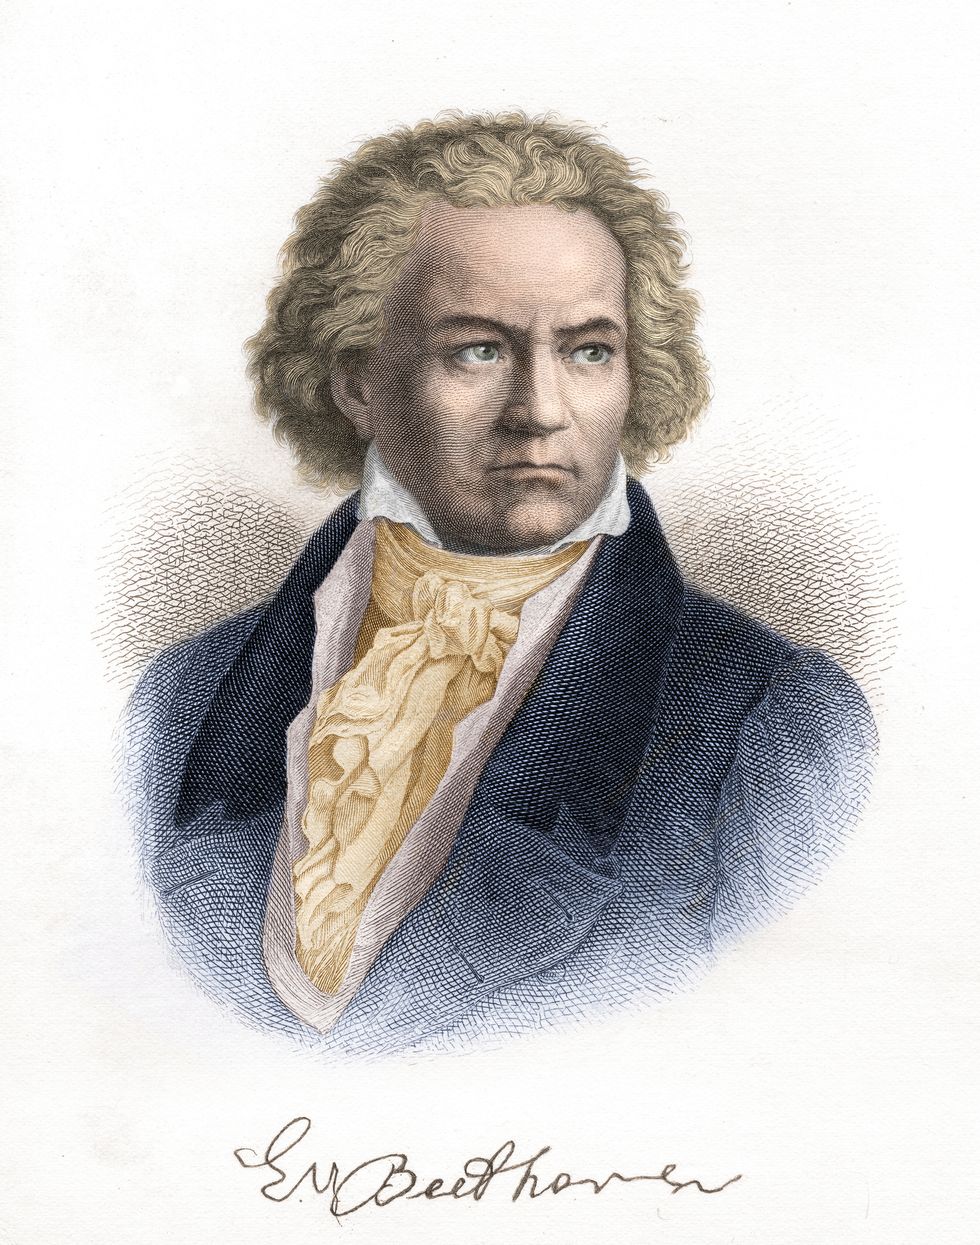 ludwig van beethoven composer portrait illustration